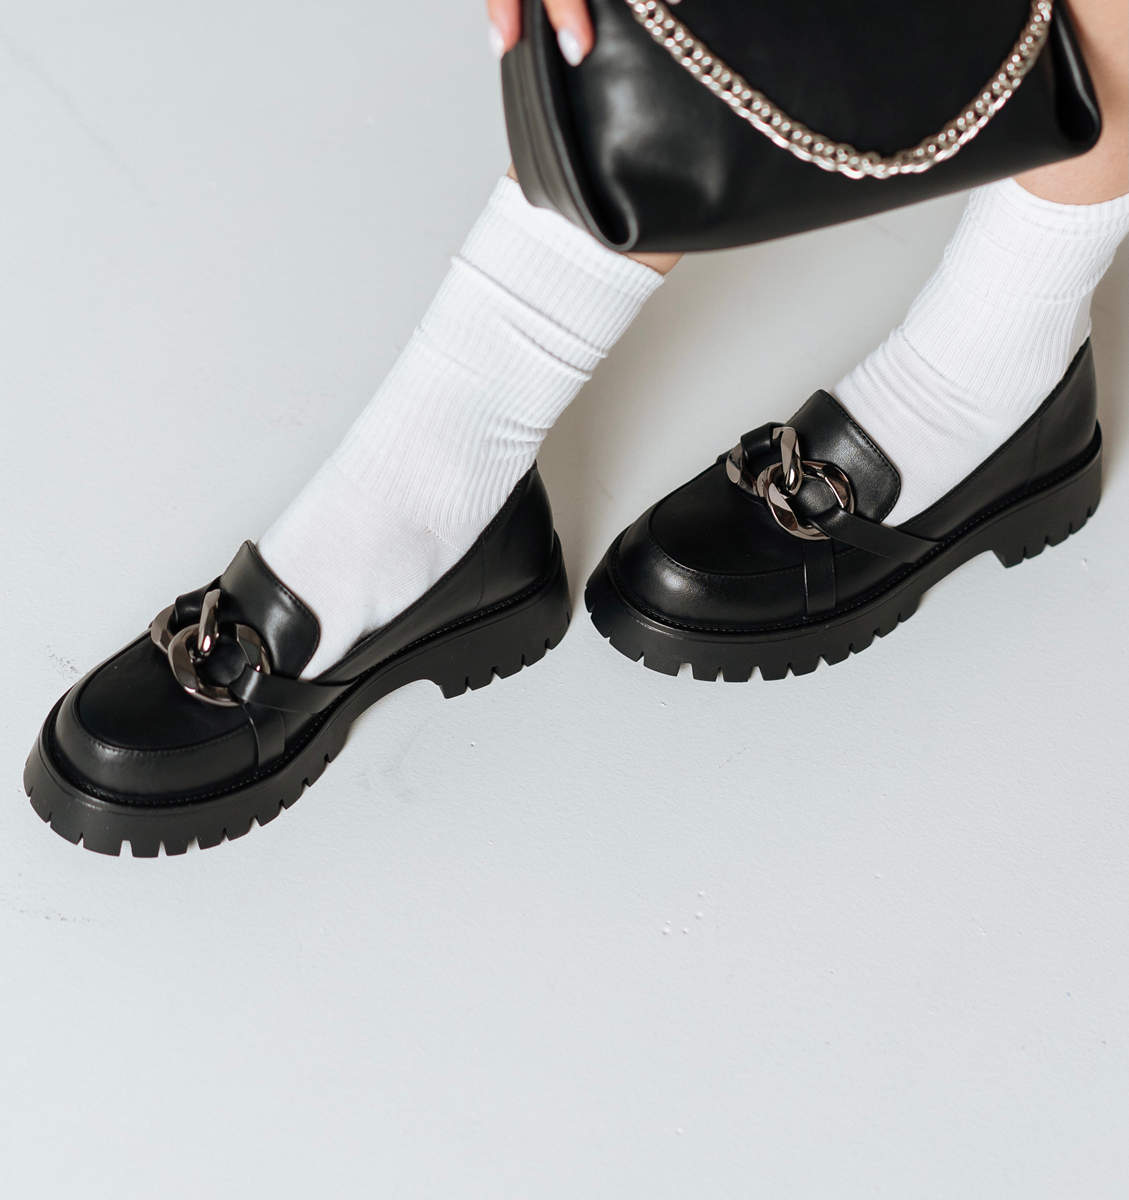 Шкарпетки або гольфи відтінюють чорний колір лоферіві невибагливо сусідствують з масивним металевим декором